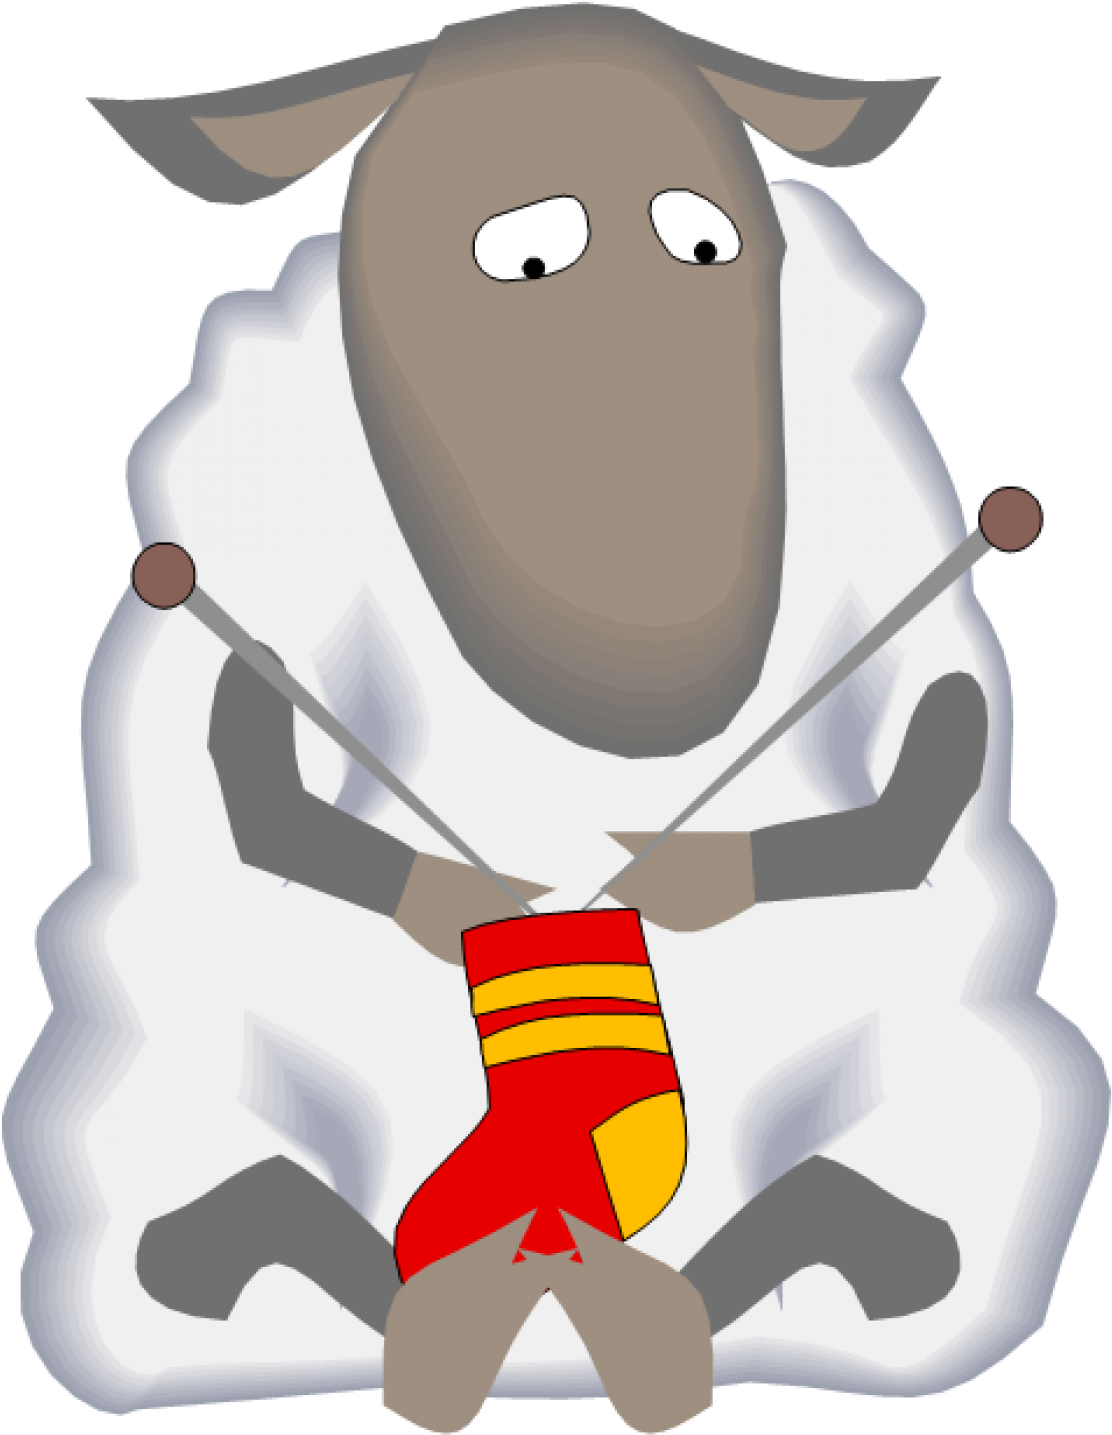 Knitting Sheep Cartoon Illustration PNG